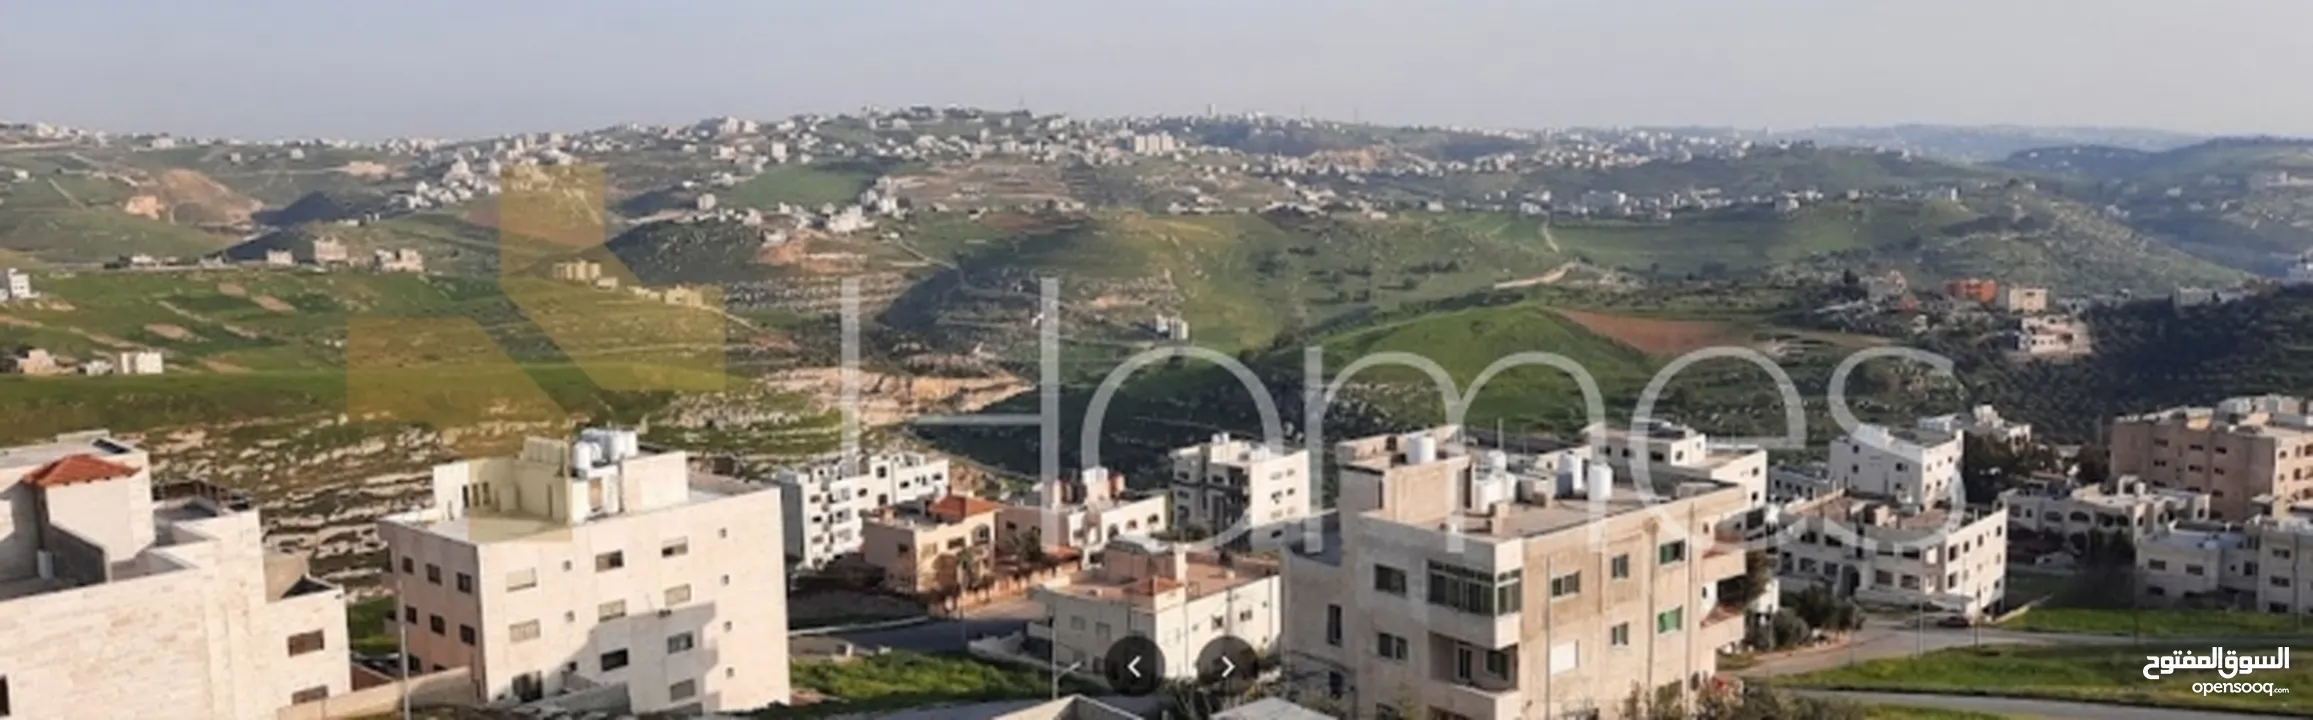 ارض سكن ب للبيع على شارعين في غرب عمان - البصة بمساحة 792م